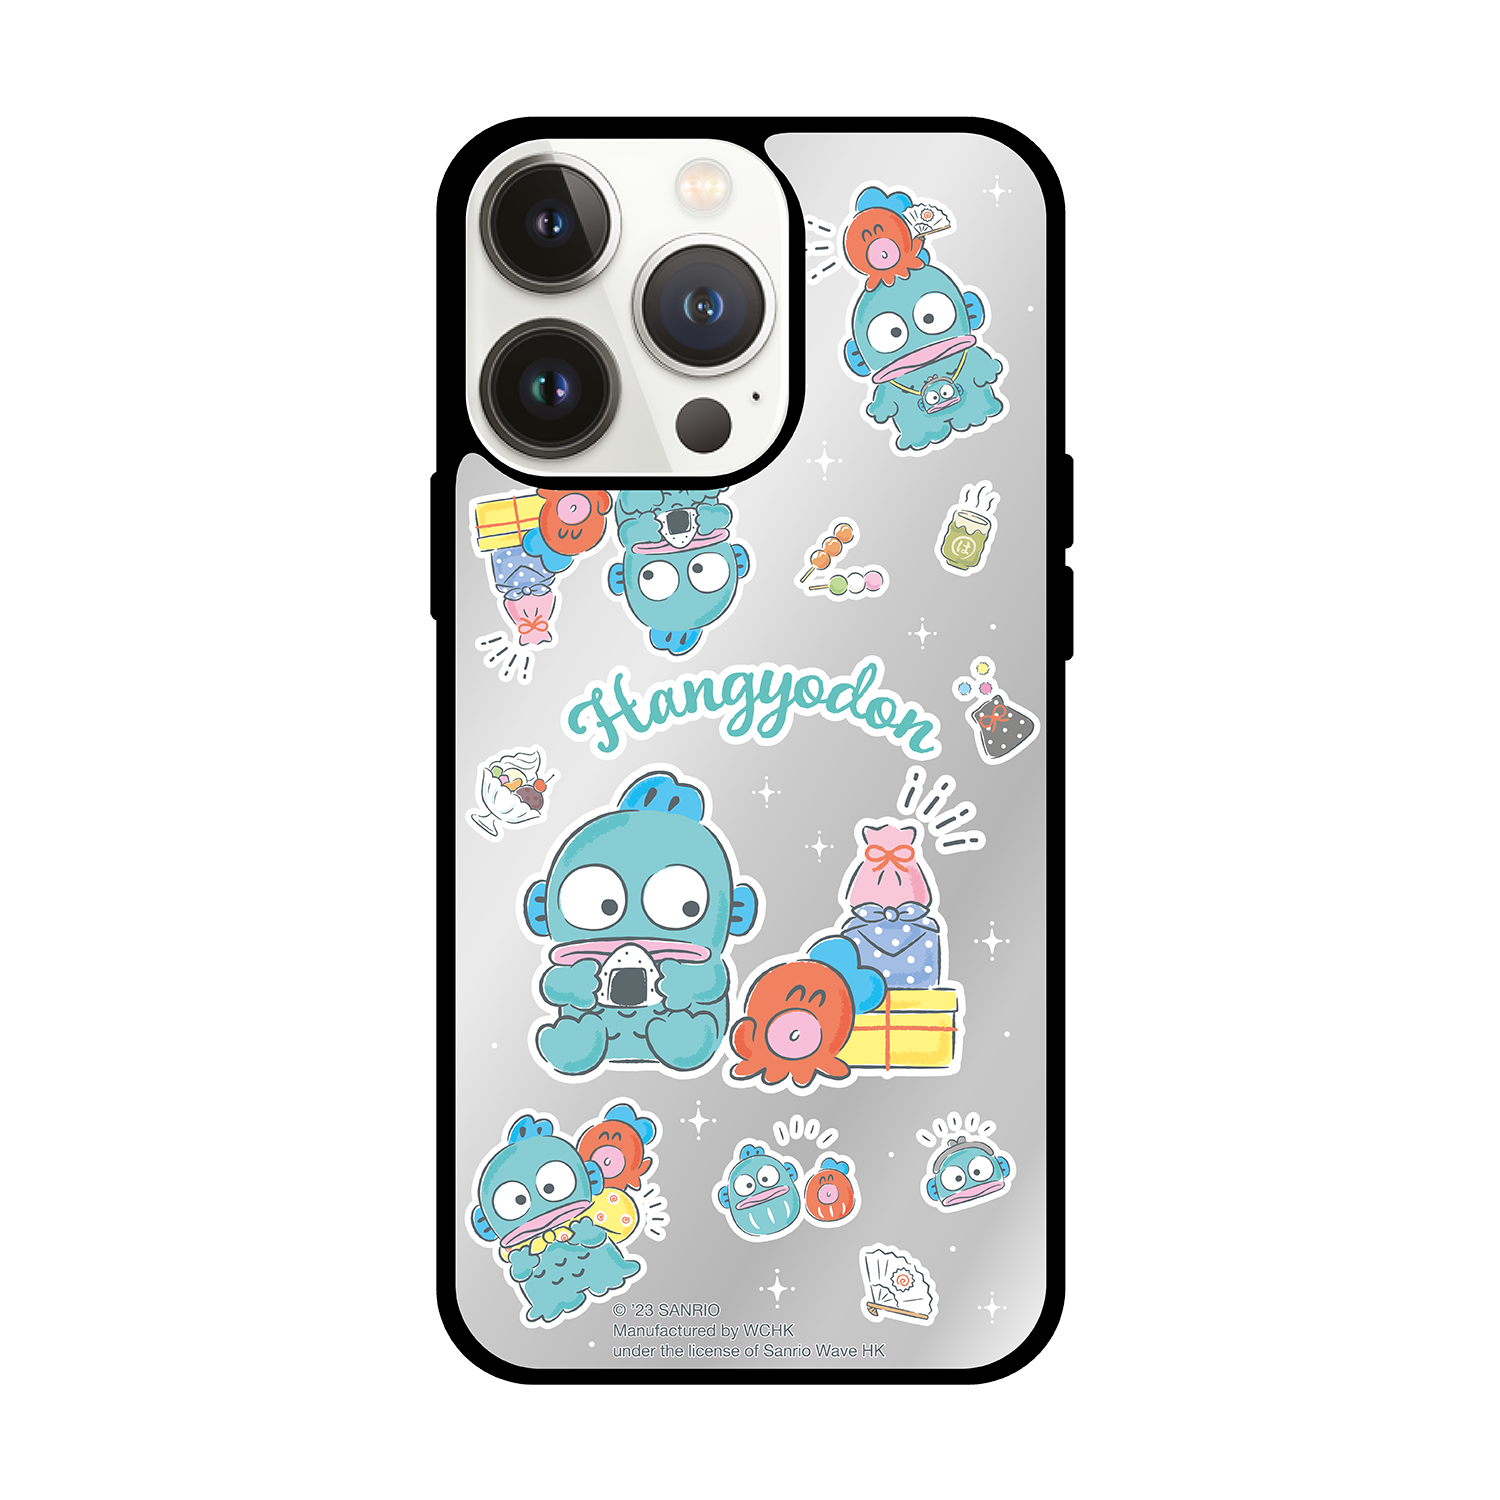 Han-GyoDon iPhone Mirror Case / Samsung Mirror Case (HG99M)